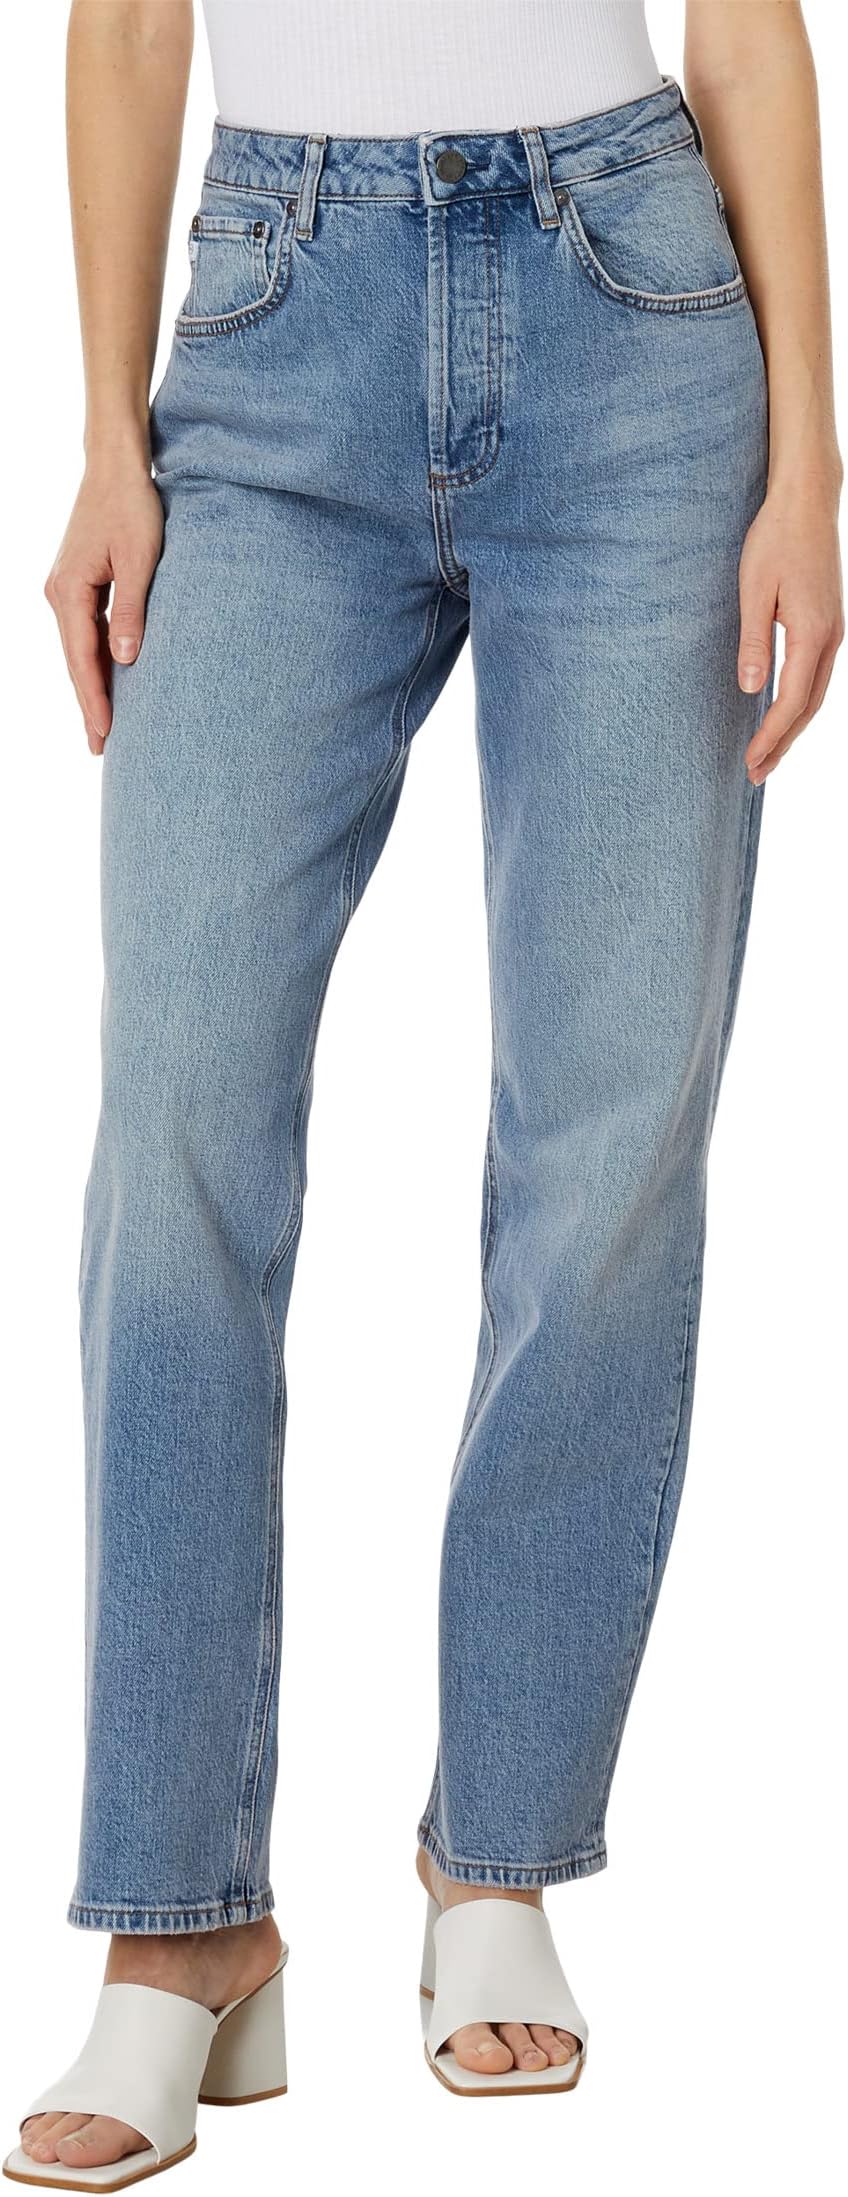 цена Джинсы Clove Relaxed Vintage Straight in Southwest AG Jeans, цвет Southwest